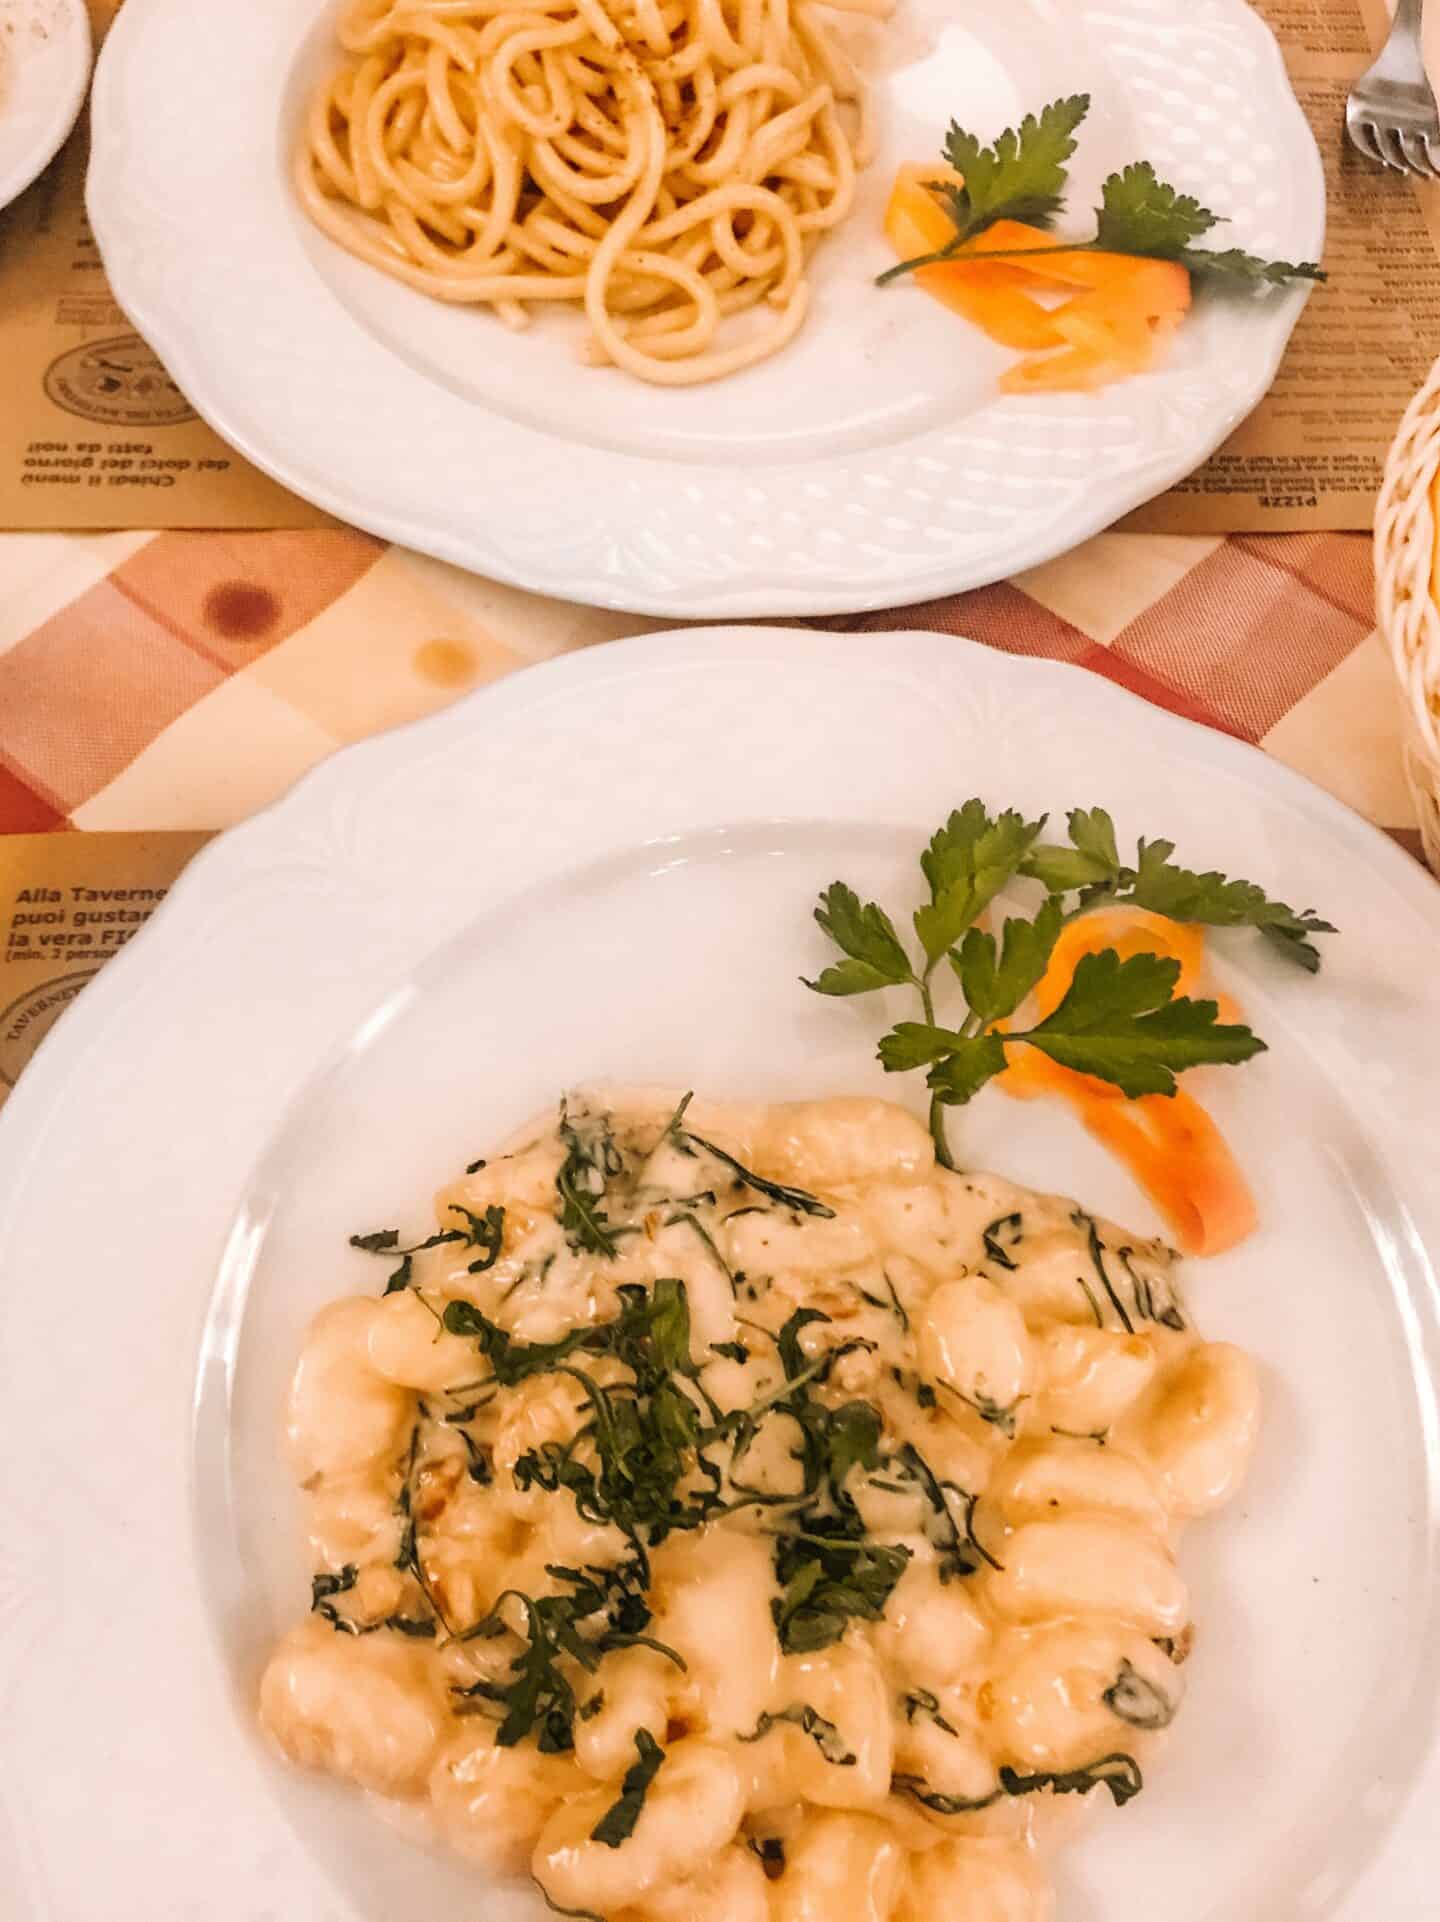 Delicious homemade pasta from Tavernetta della Signoria 